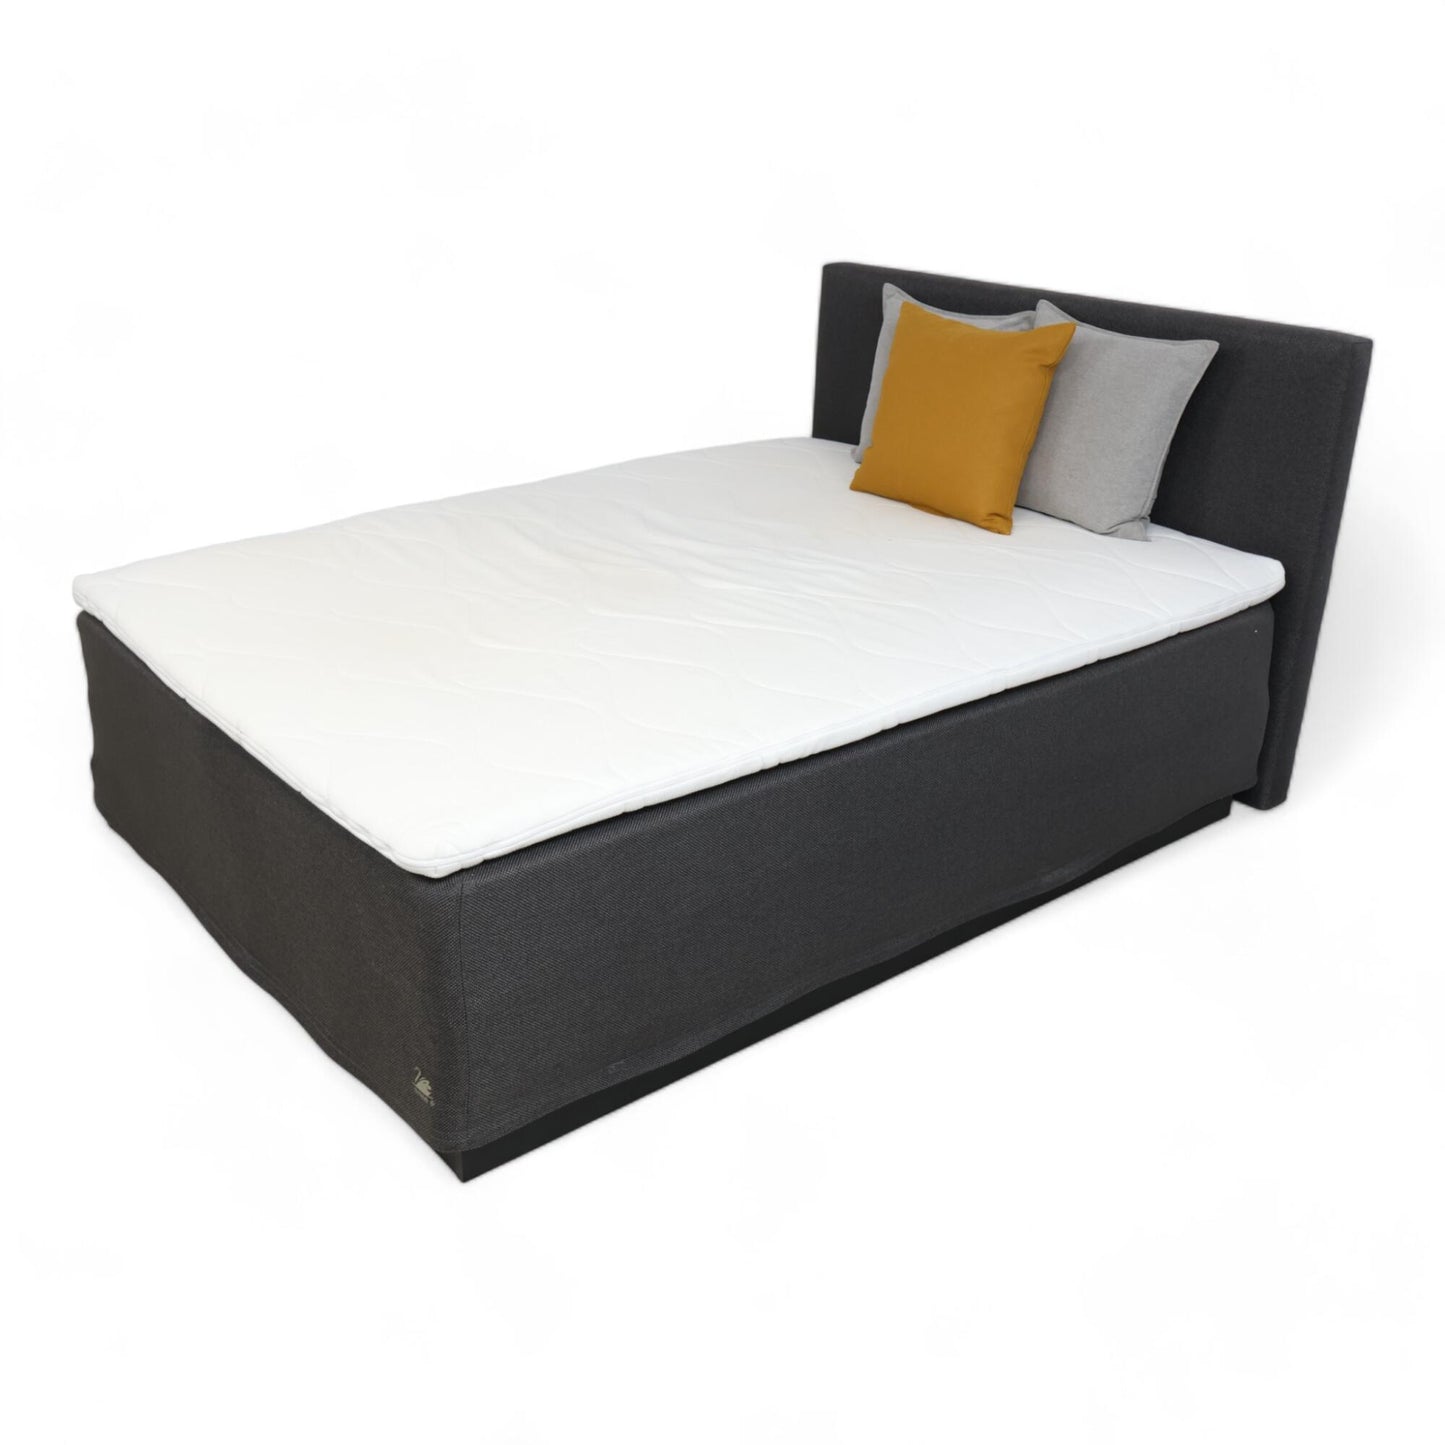 Nyrenset | Mørk grå Svane seng med gavl, 150x200